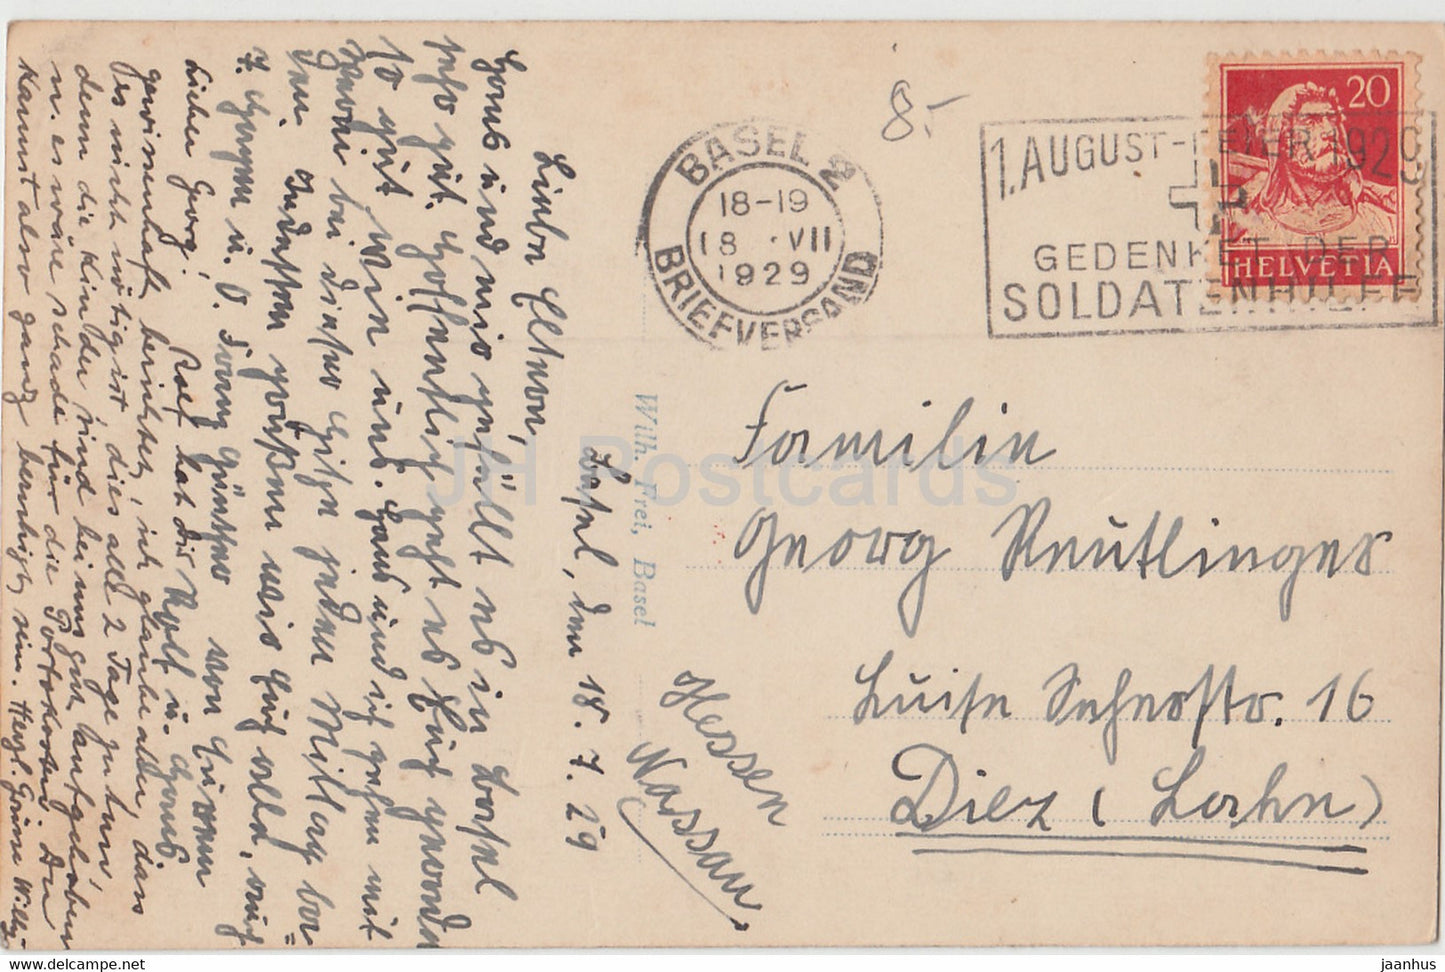 Bâle - Bâle - Munster mit Pfalz - 1226 - carte postale ancienne - 1929 - Suisse - utilisé